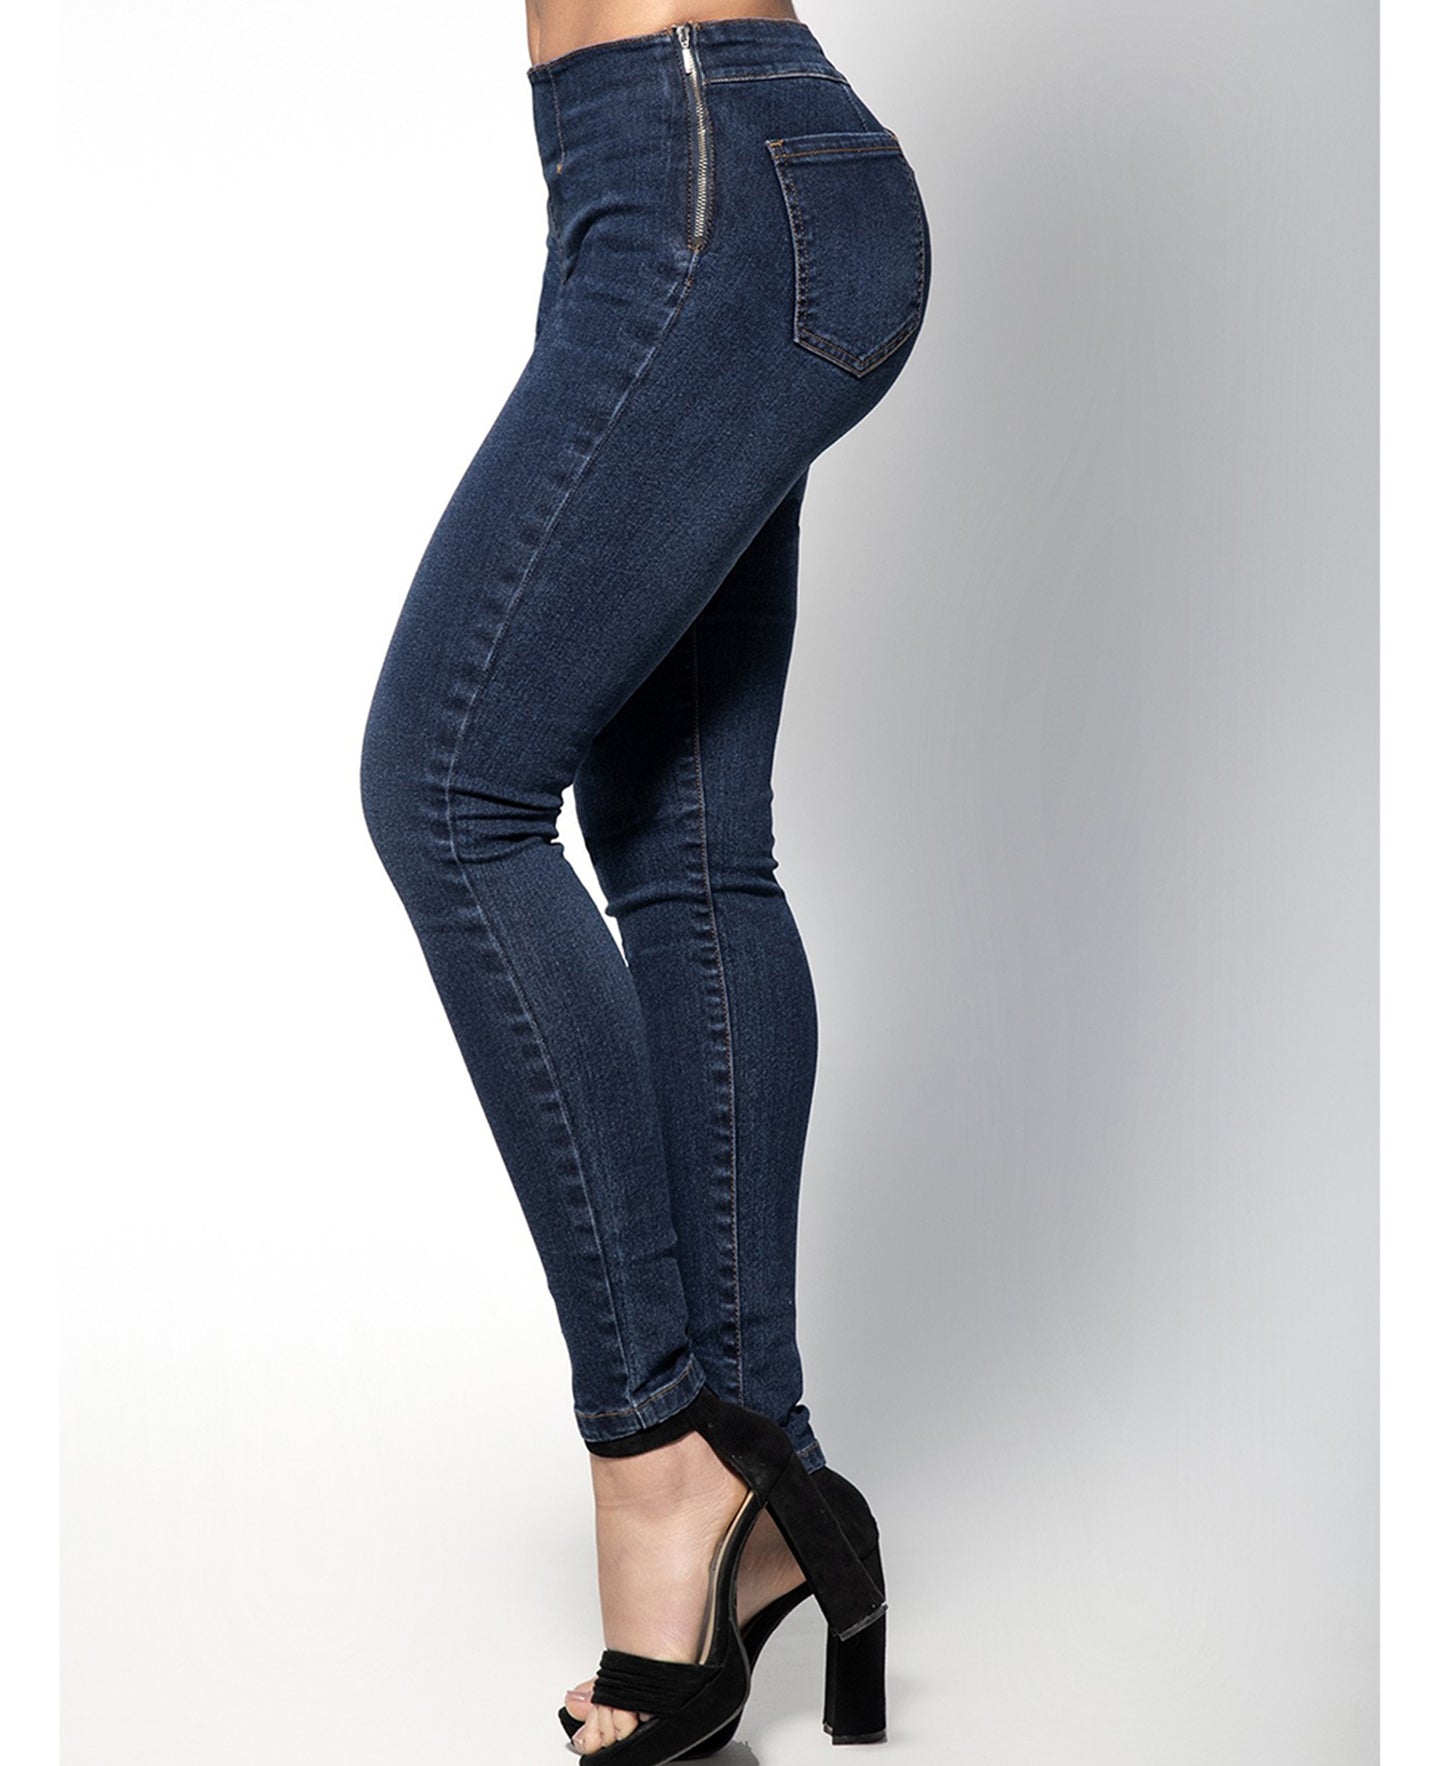 D1914 Jeans w/Side Zipper side view